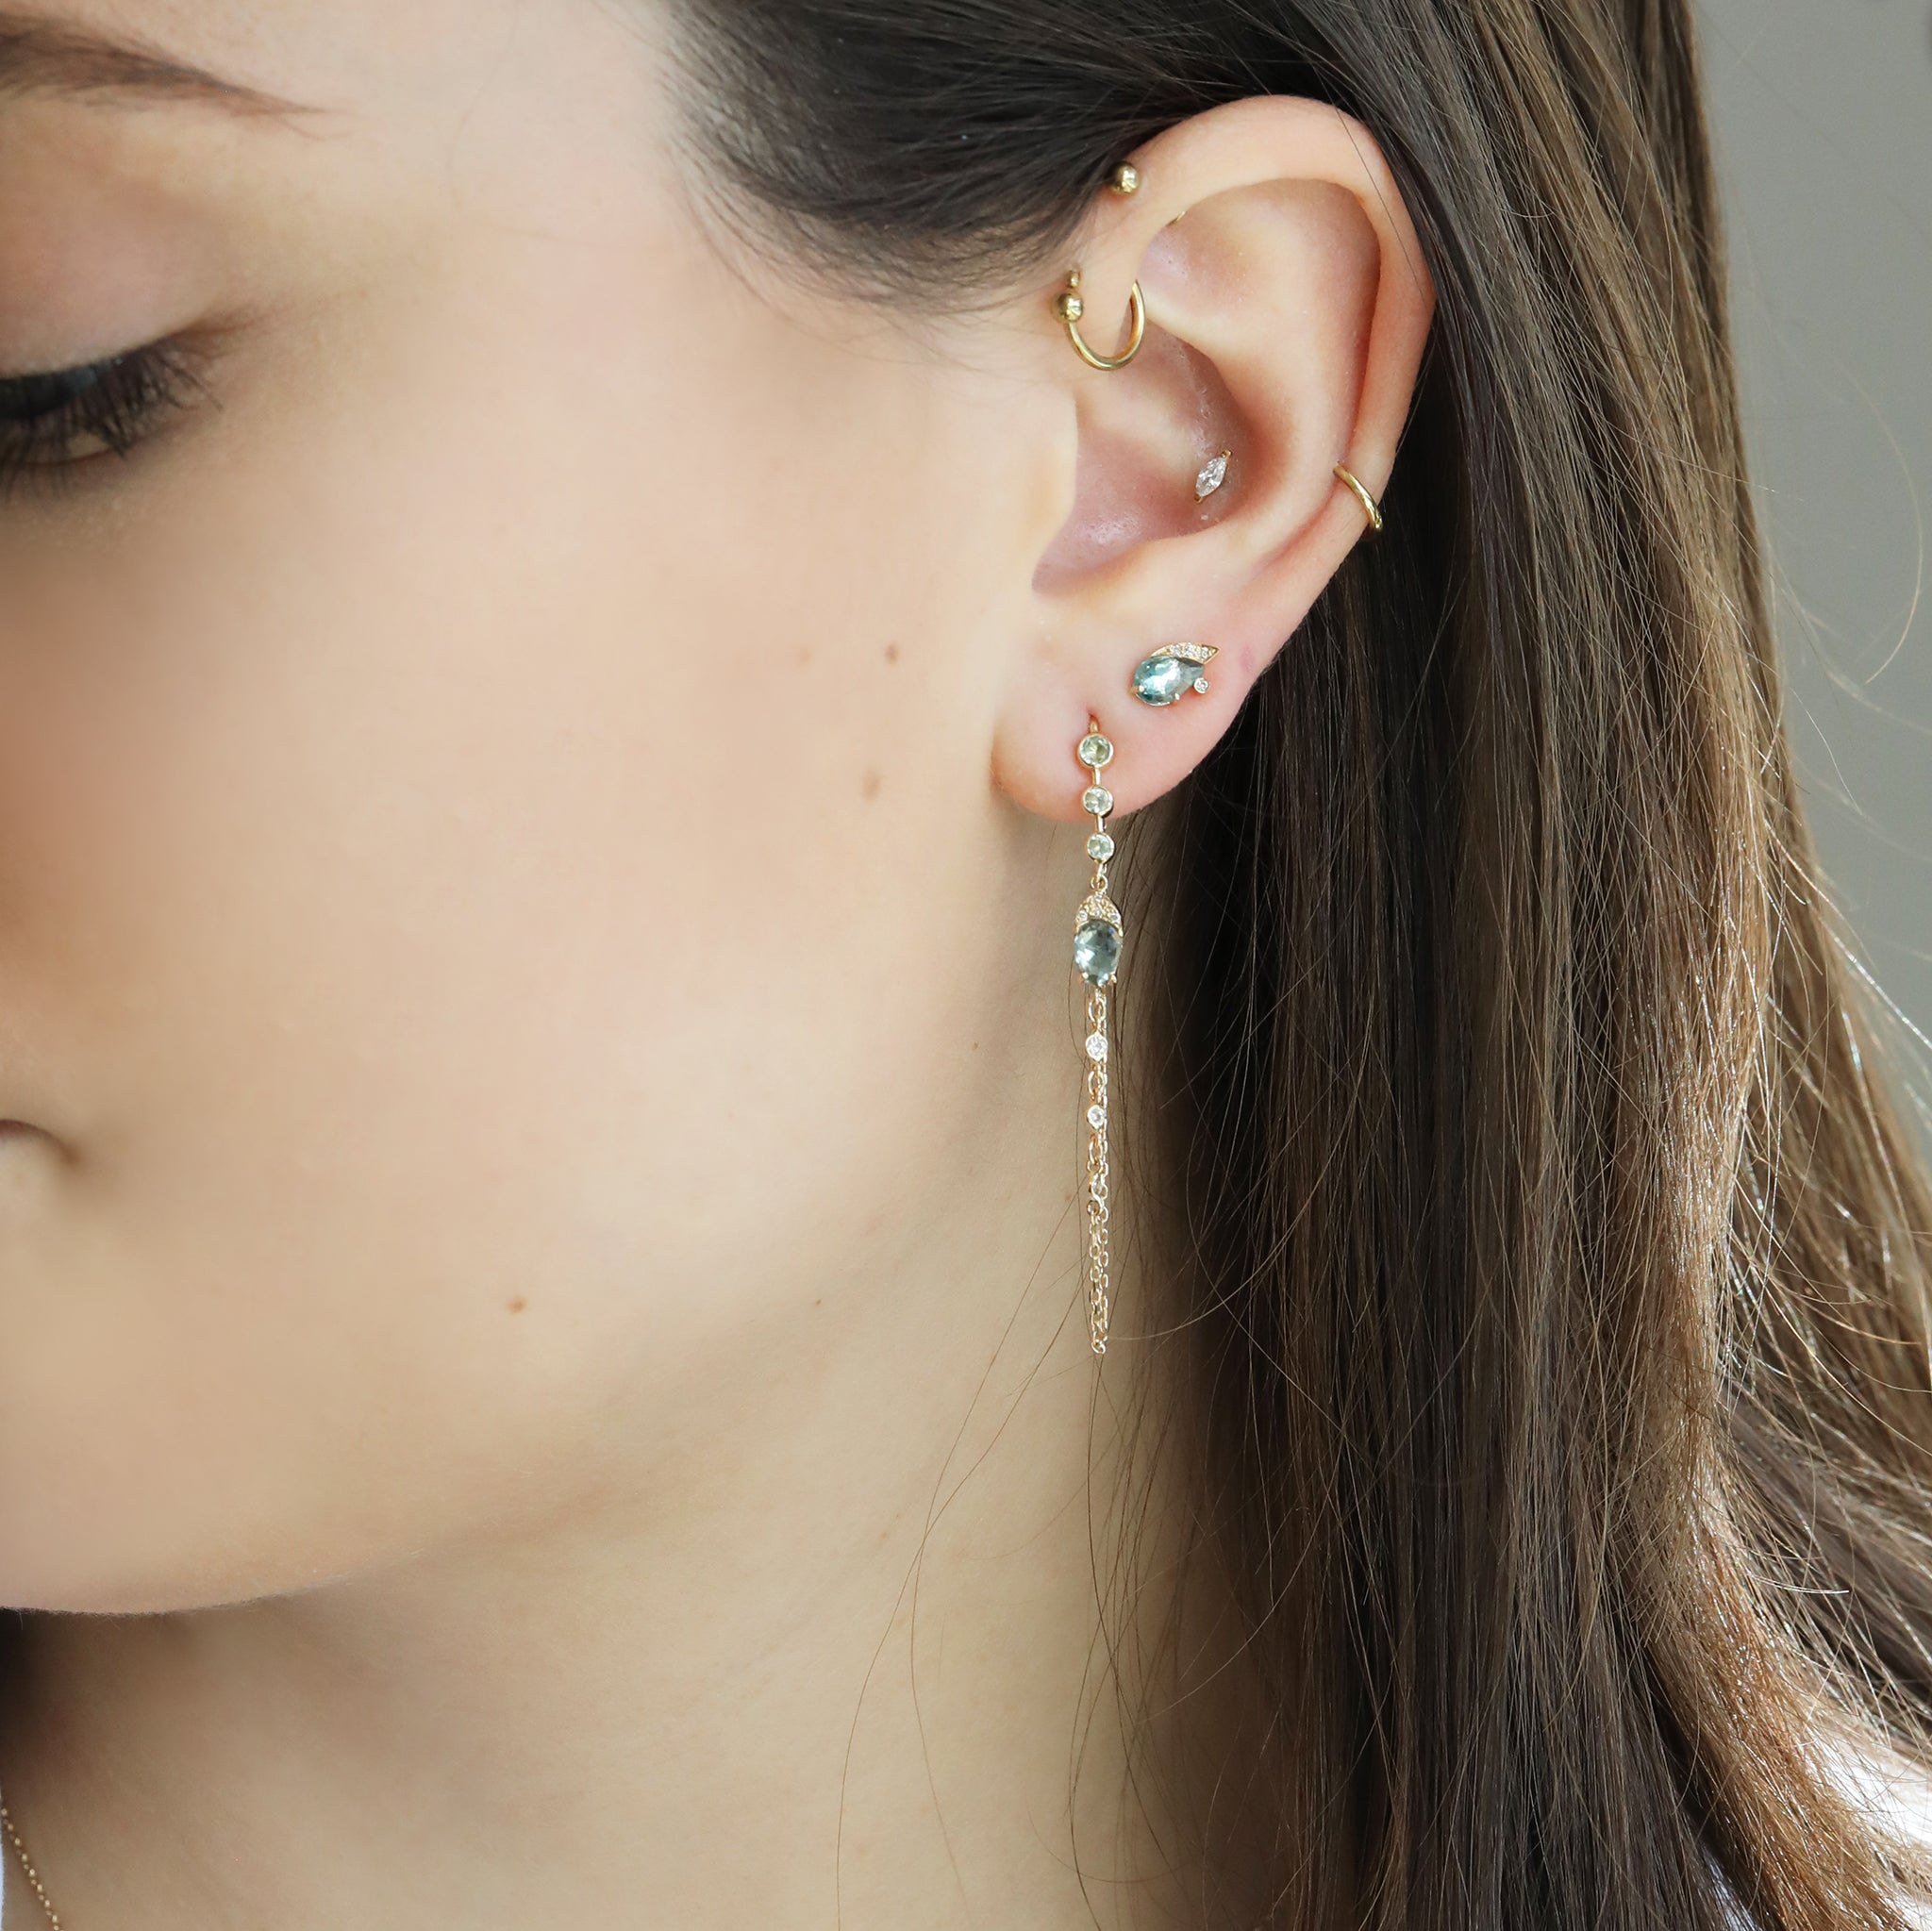 Mint Green Tourmaline & Diamond Chain Wrap Earrings - Peridot Fine Jewelry - Celine Daoust